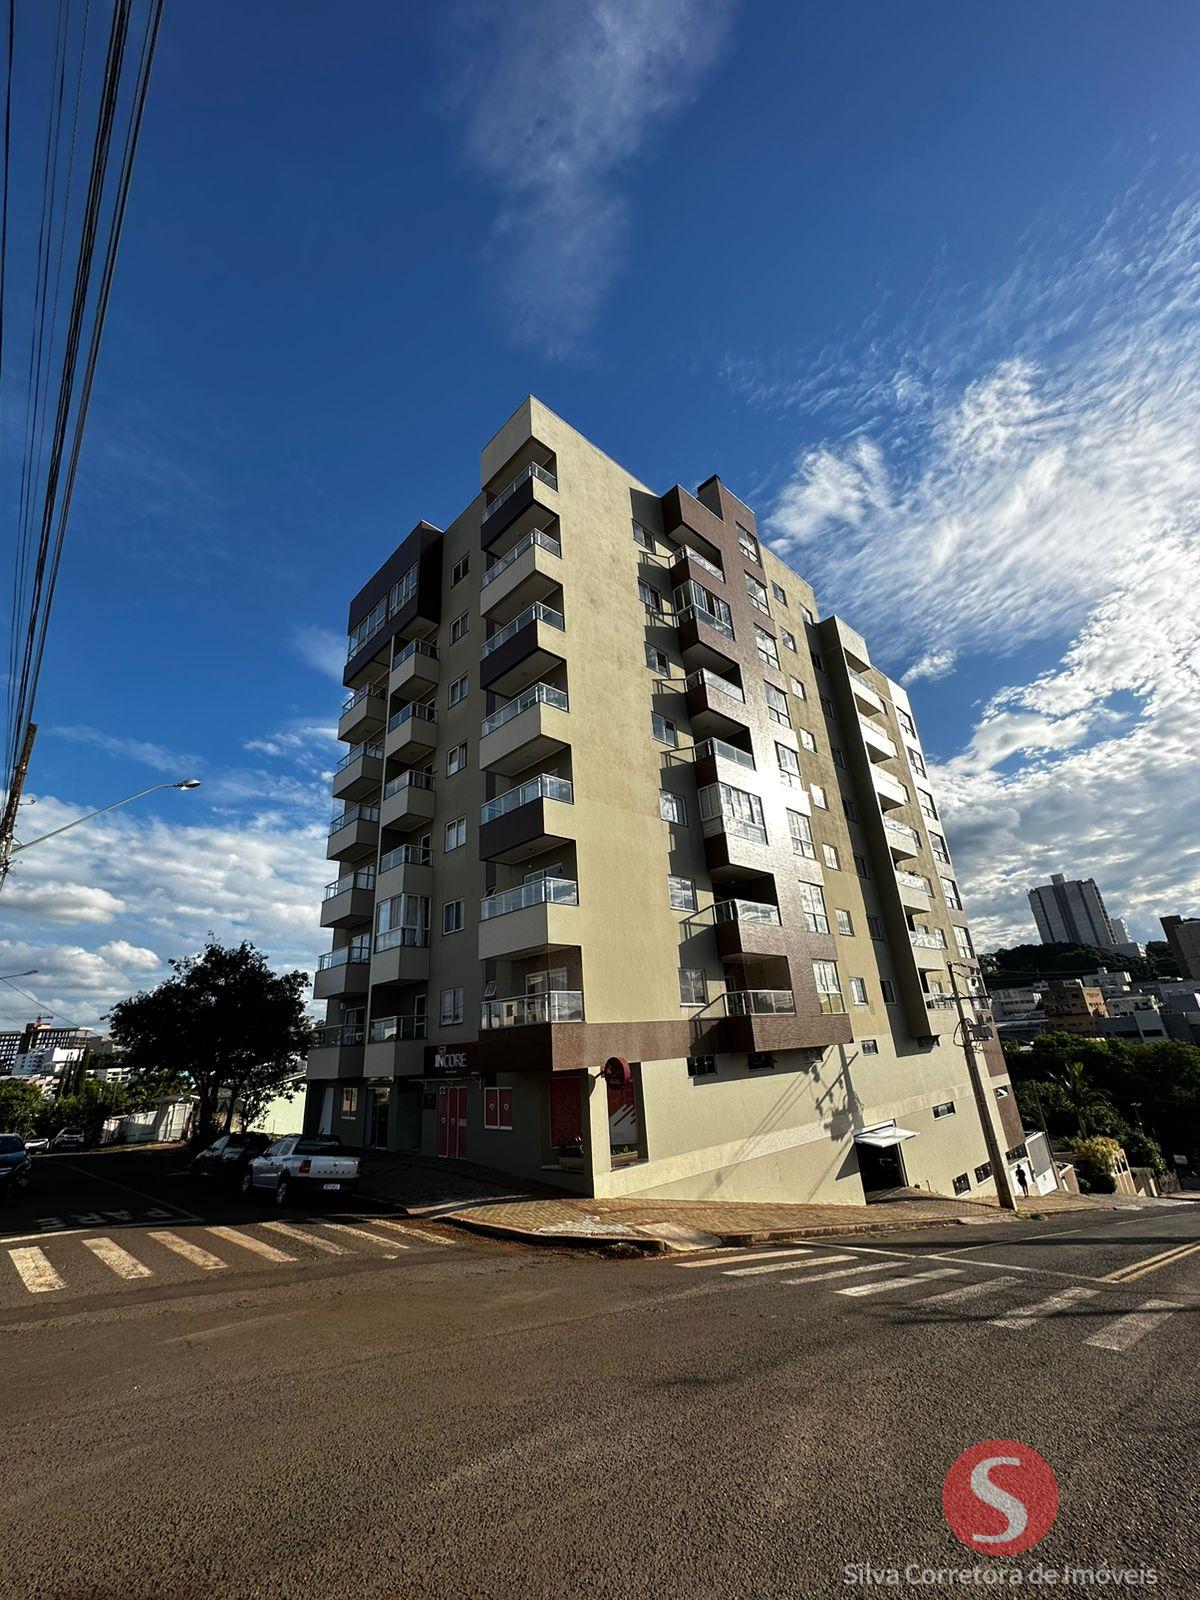 Apartamento a venda, localizado no Bairro das Torres, Dois Viz...